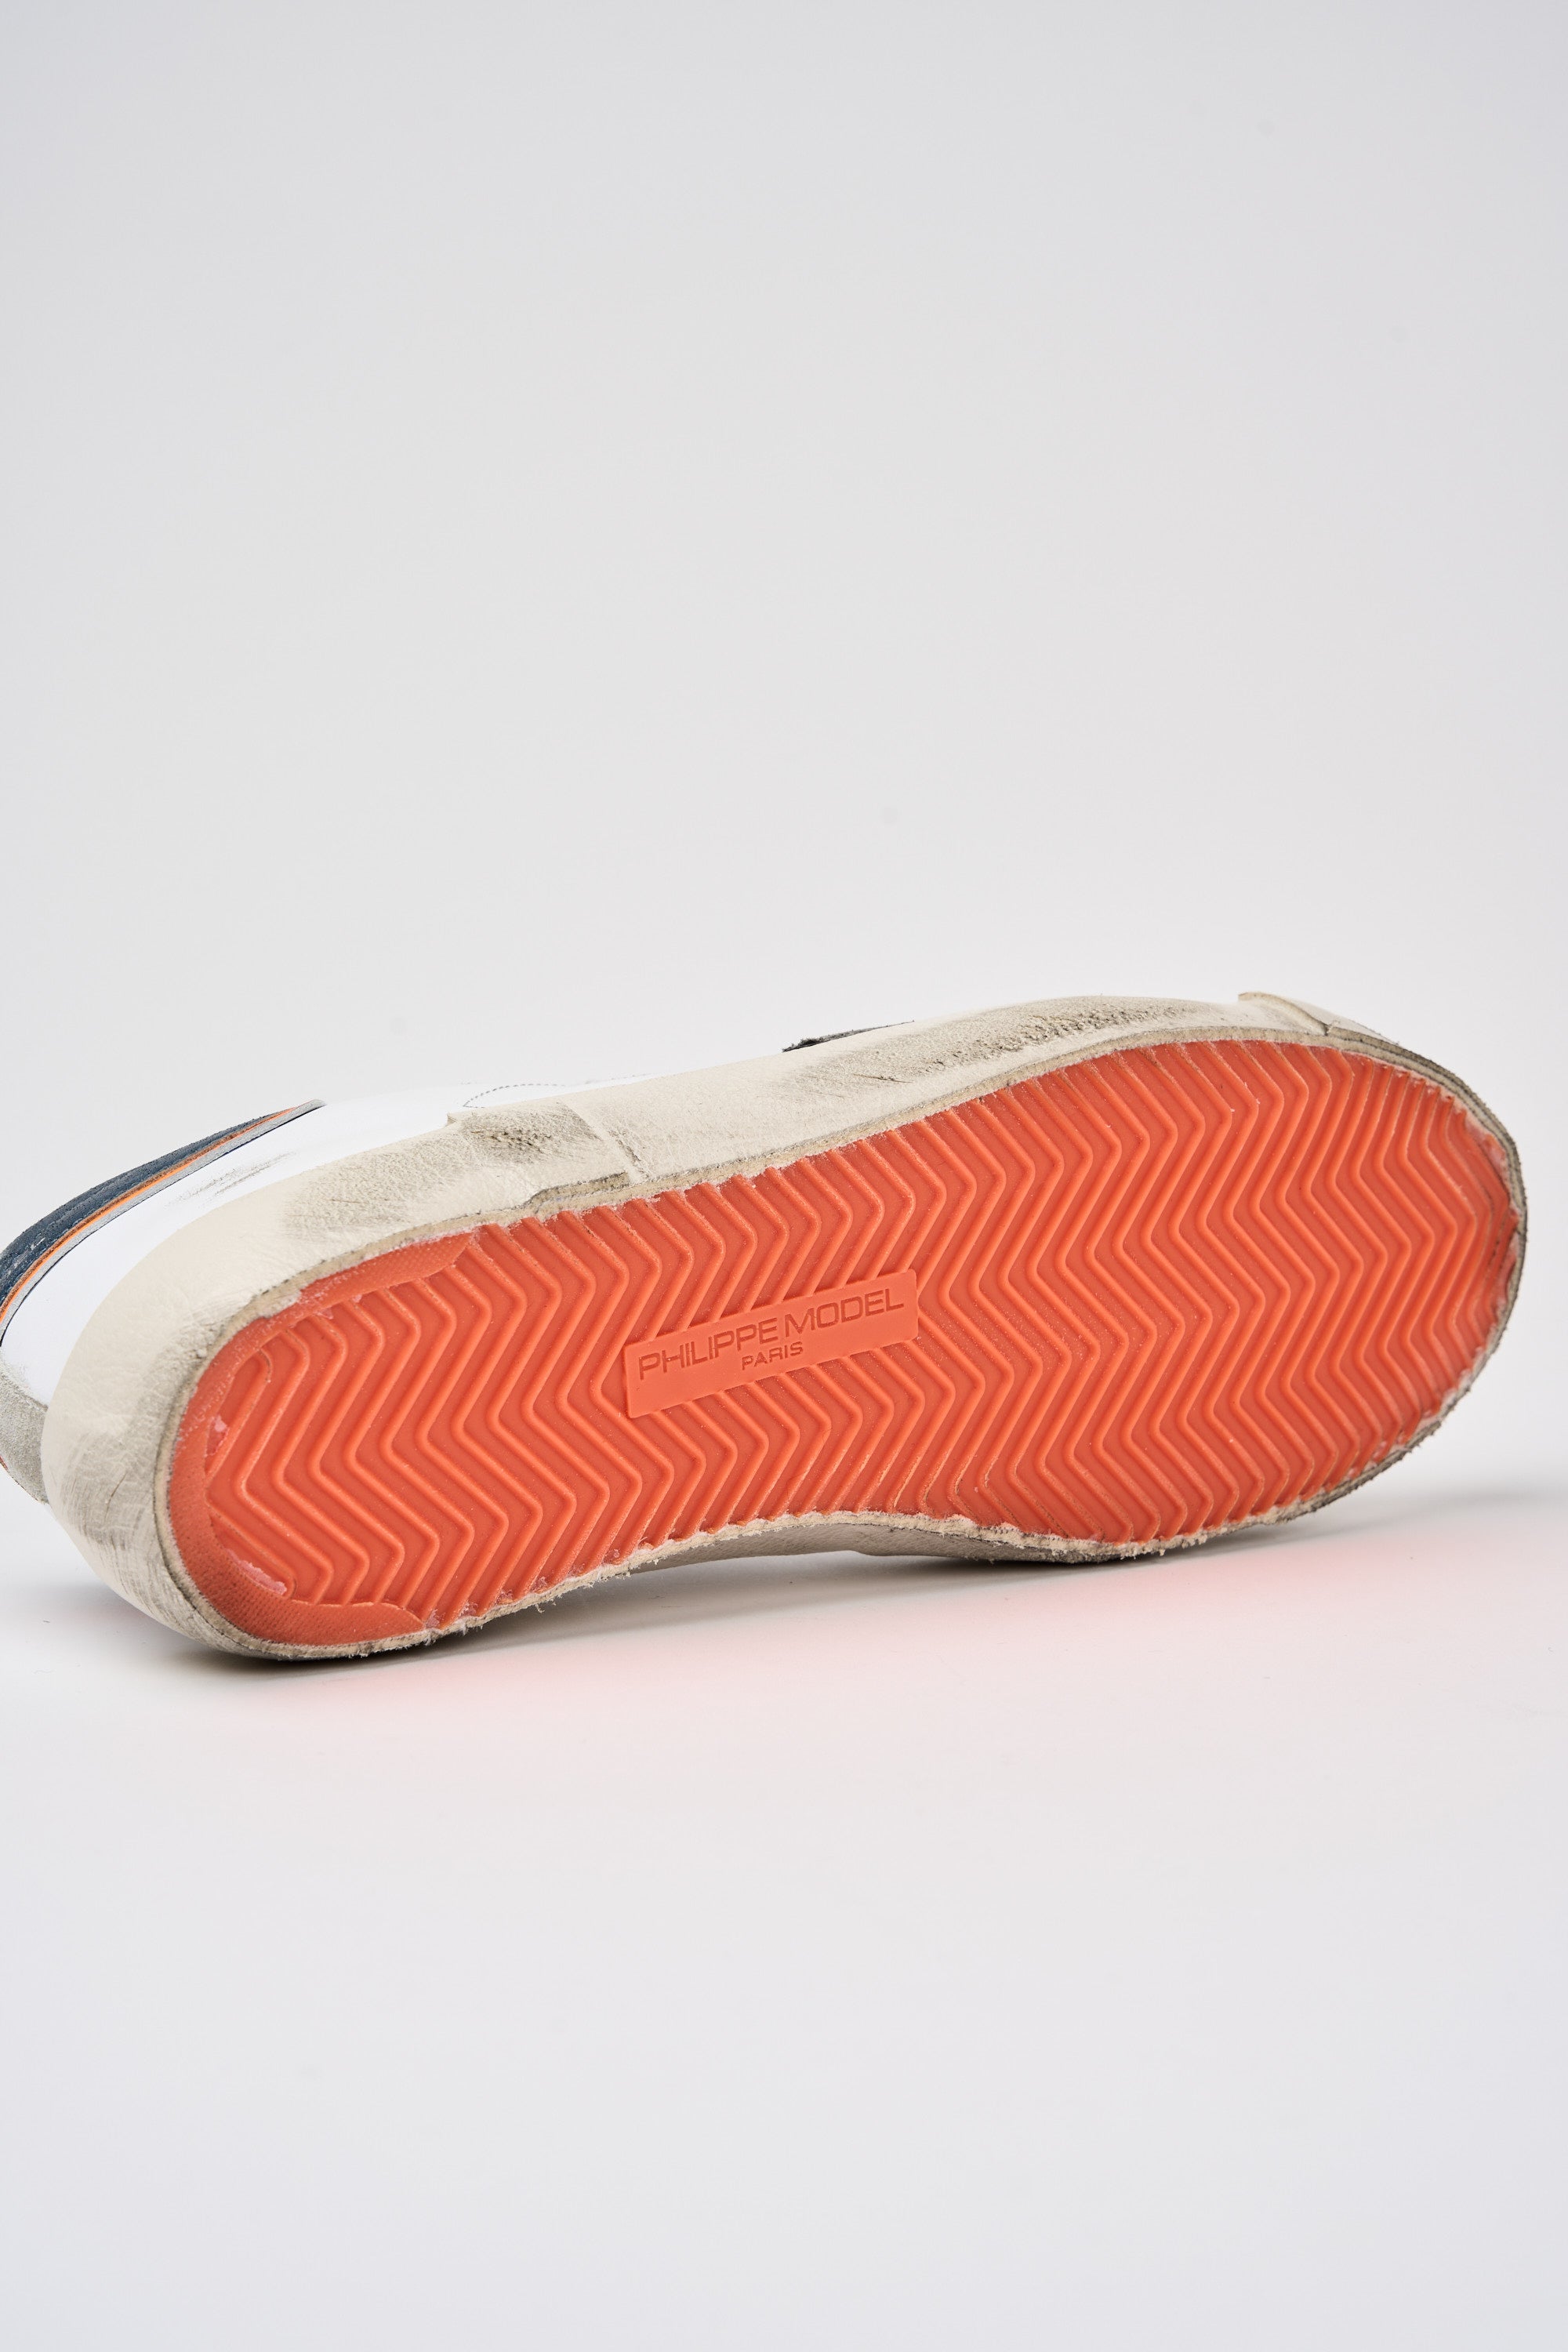 Philippe Model Sneaker Prsx Leather/Suede White/Denim-5